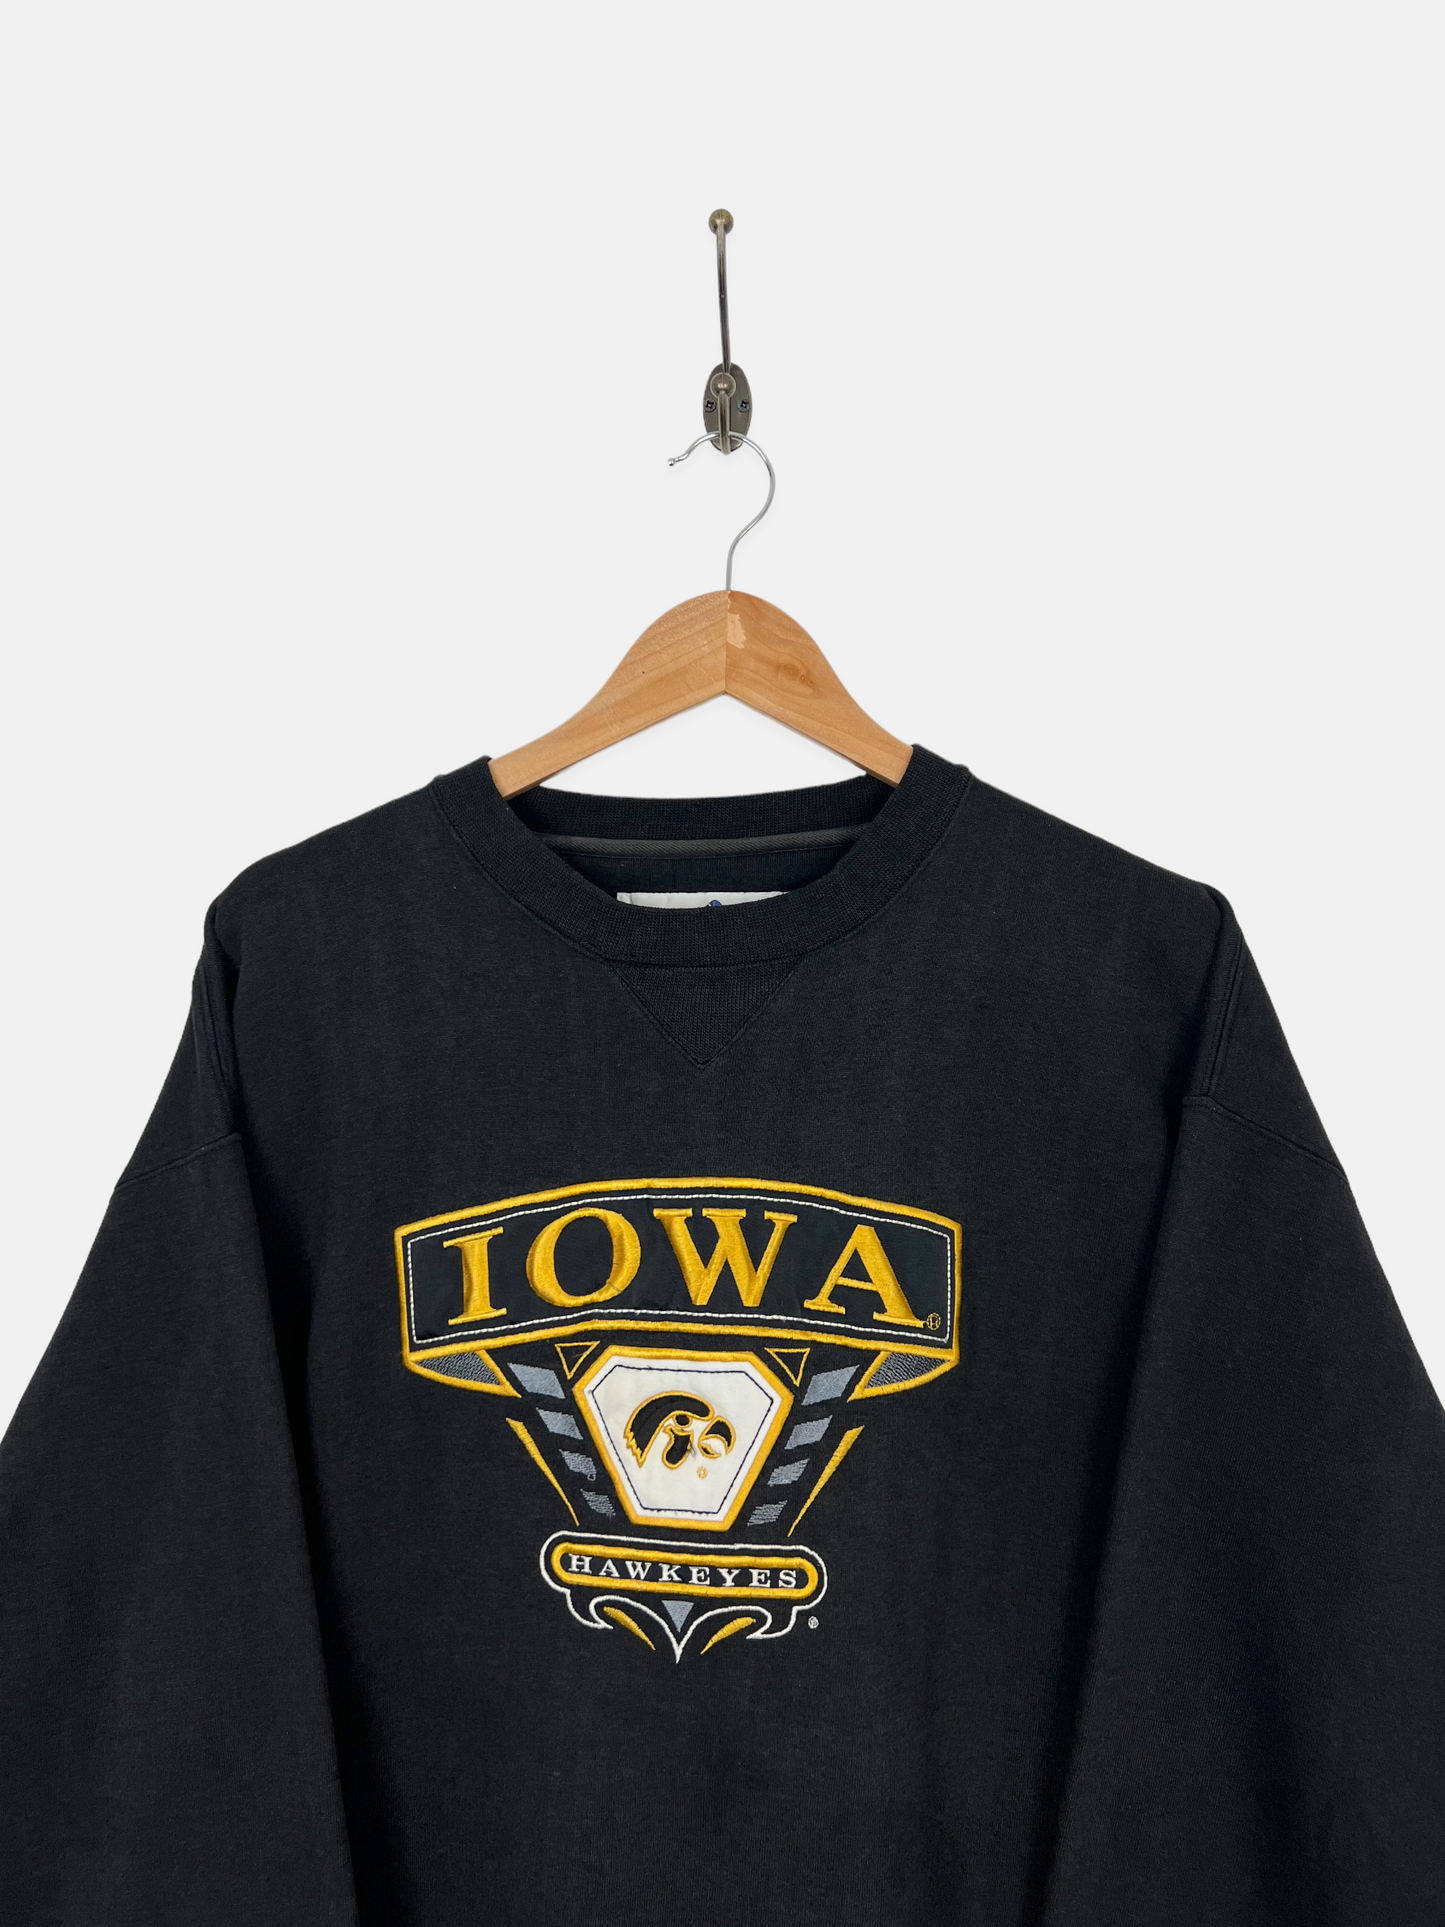 90's Iowa Hawkeyes Embroidered Vintage Sweatshirt Size XL